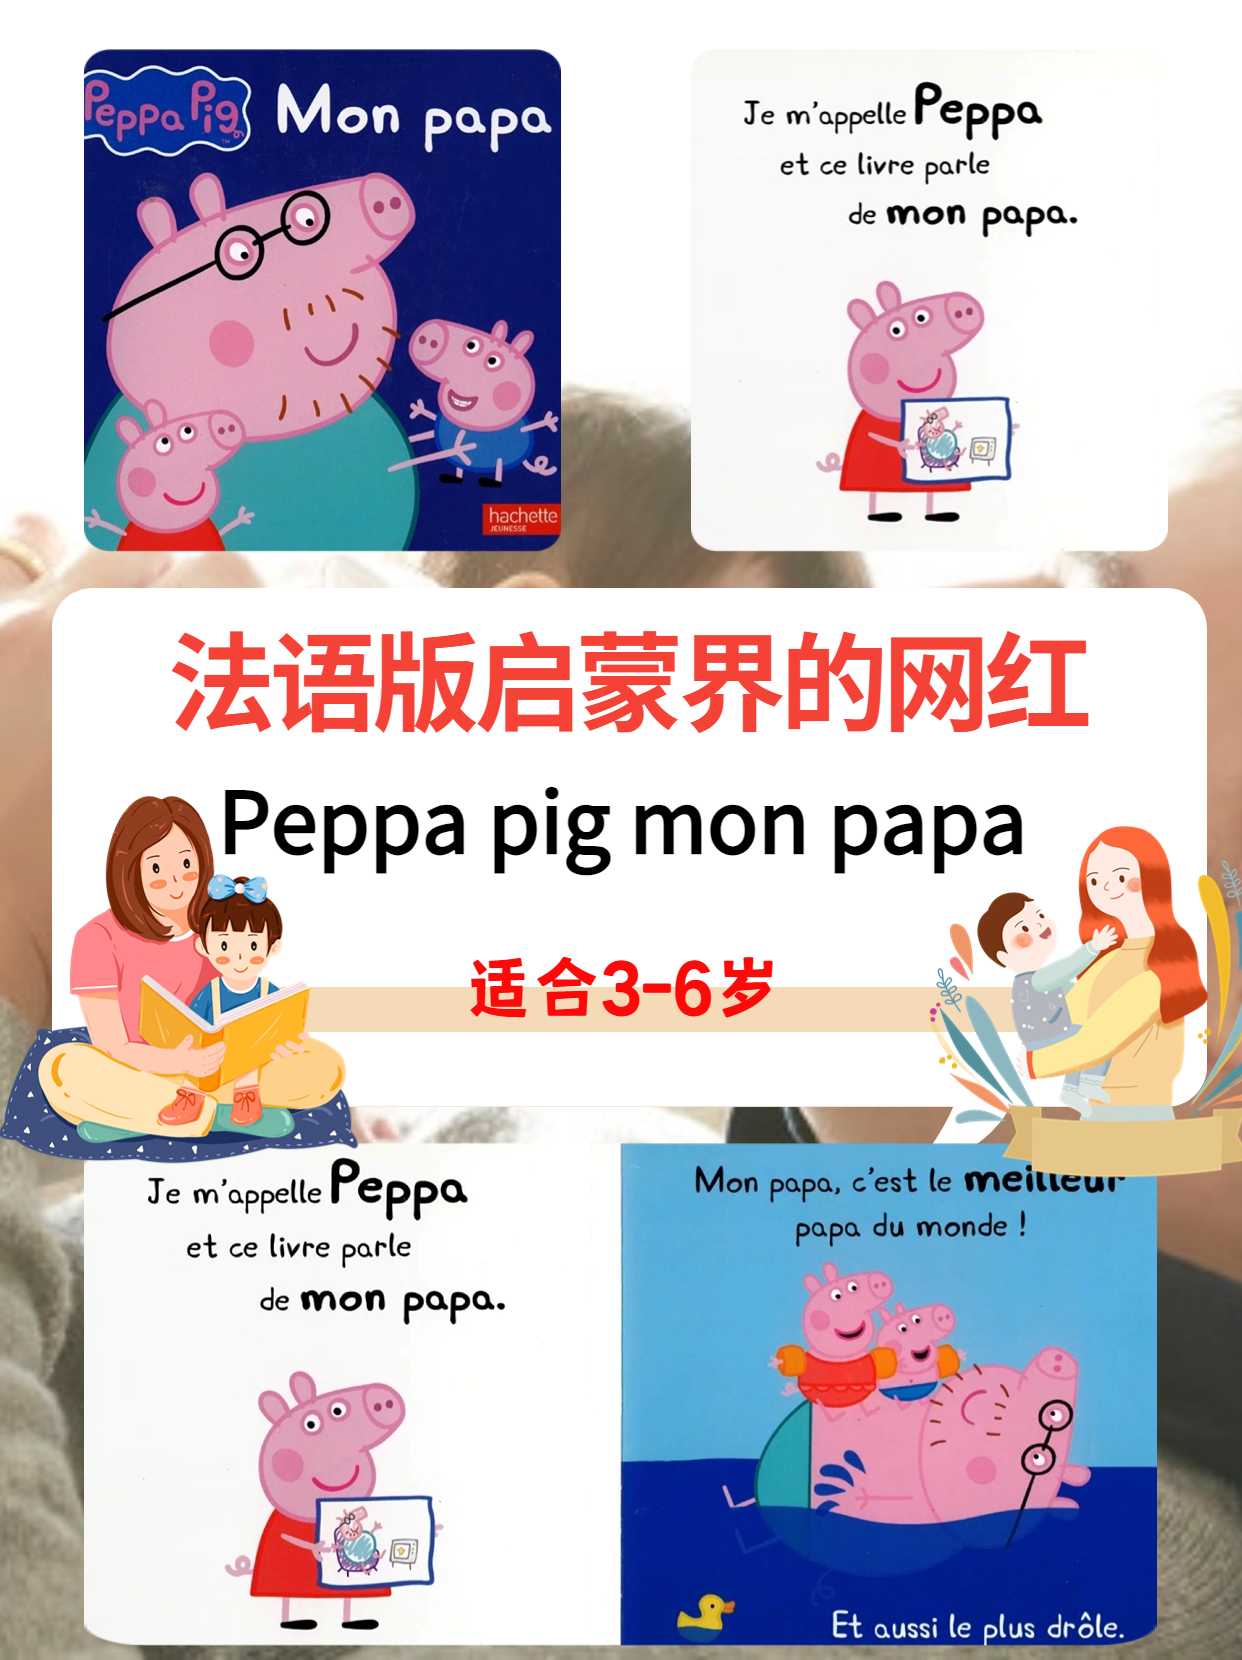 法语分享|法语启蒙绘本小猪佩奇Peppa pig mon papa 我的爸爸，适读3岁+